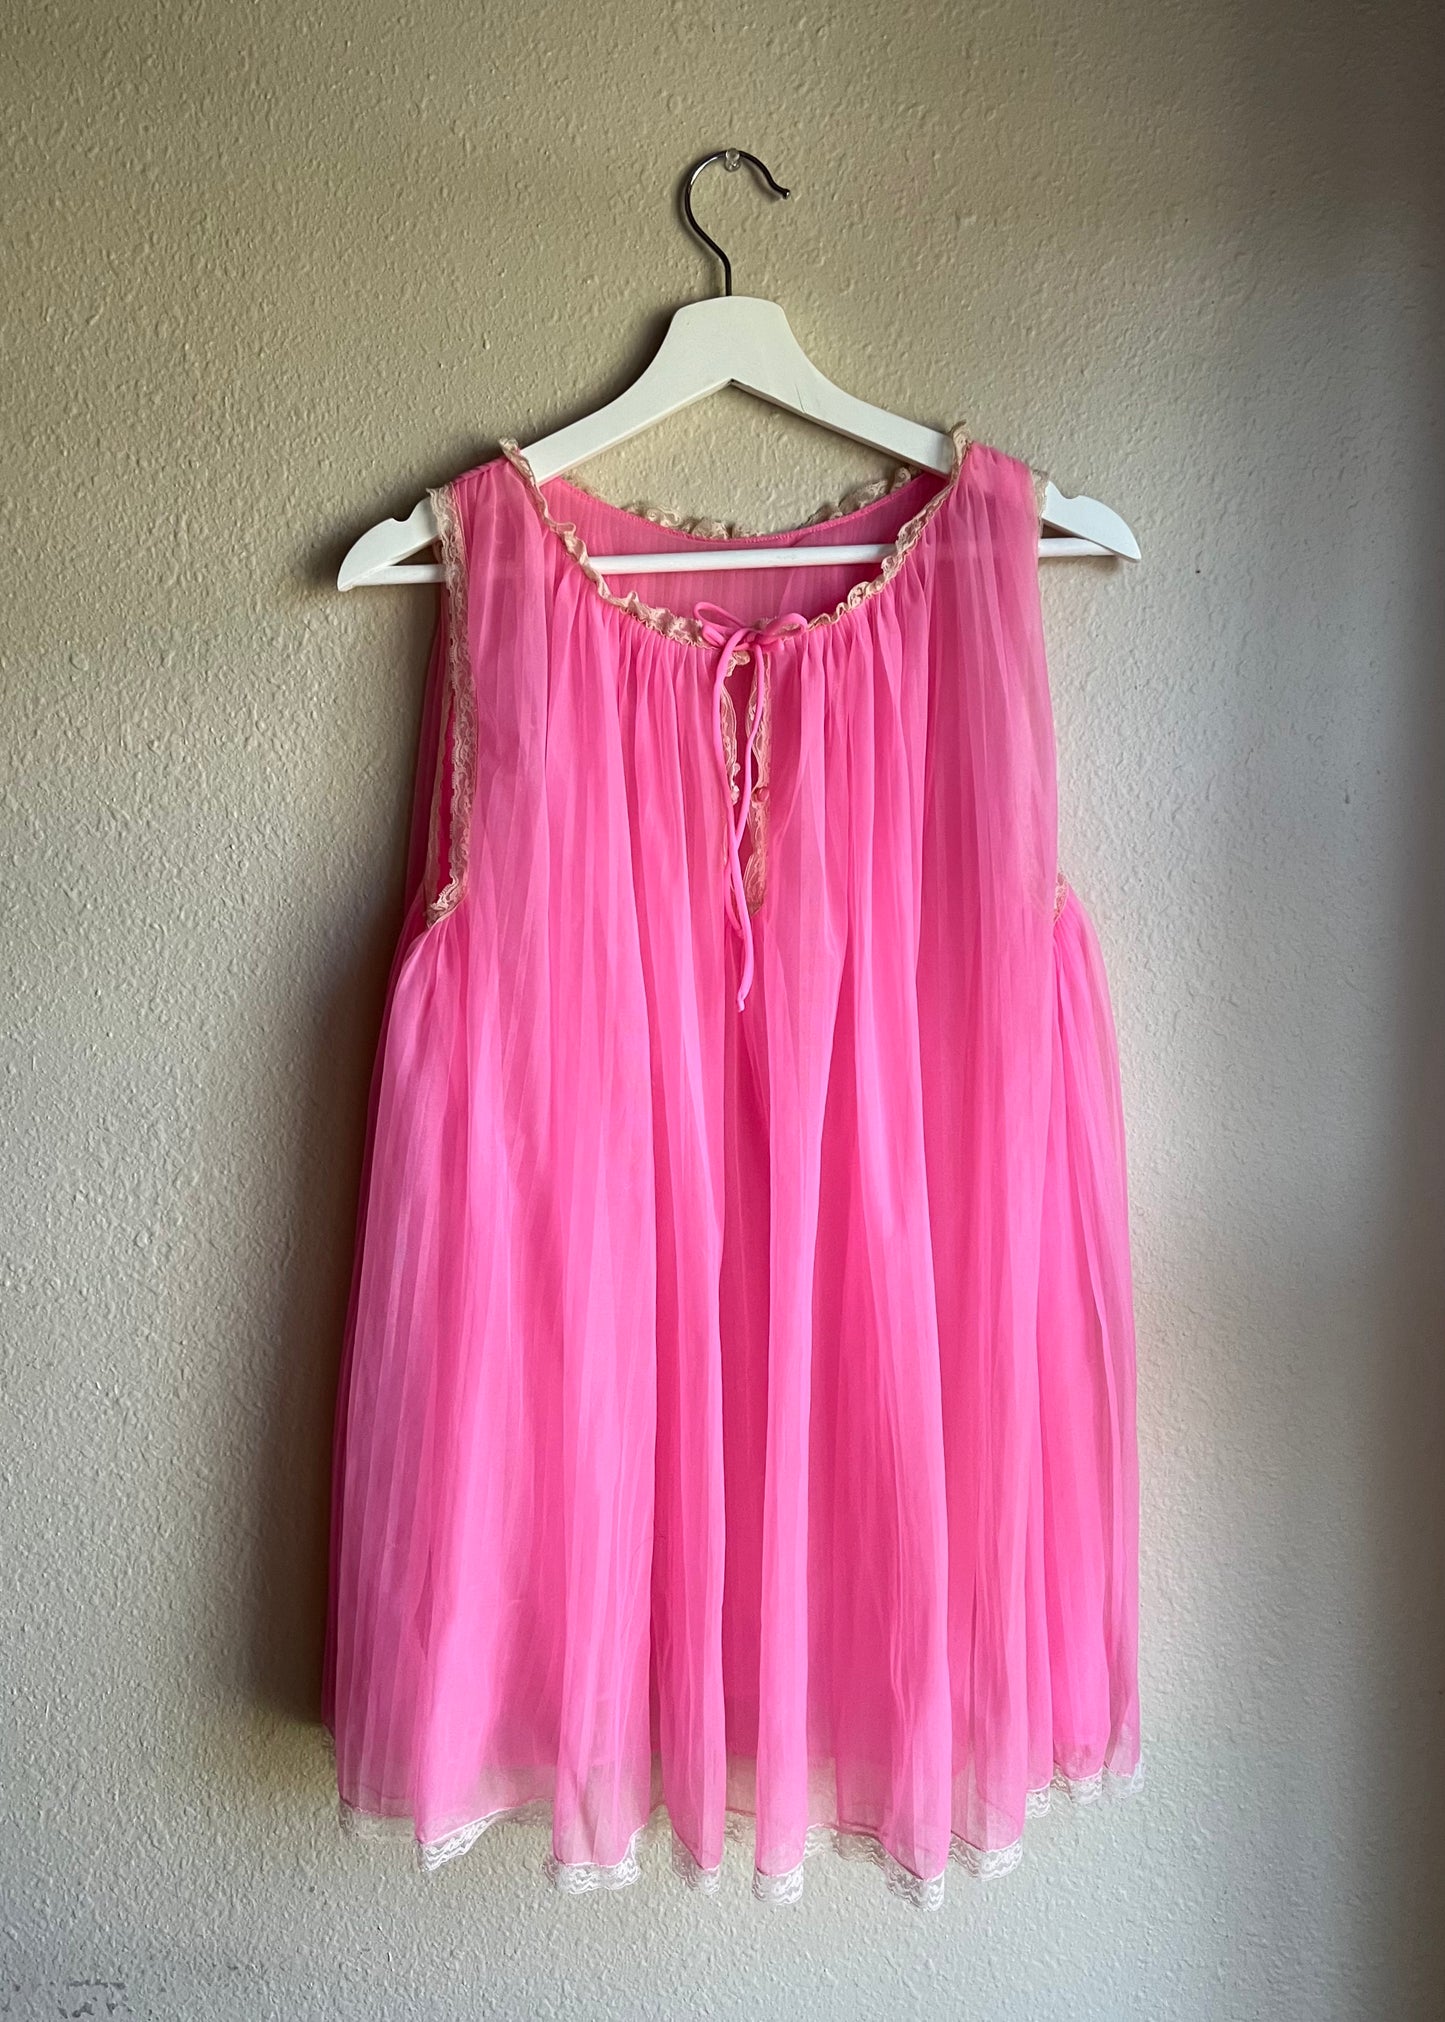 Pink Vintage Sleepwear Lingerie Top